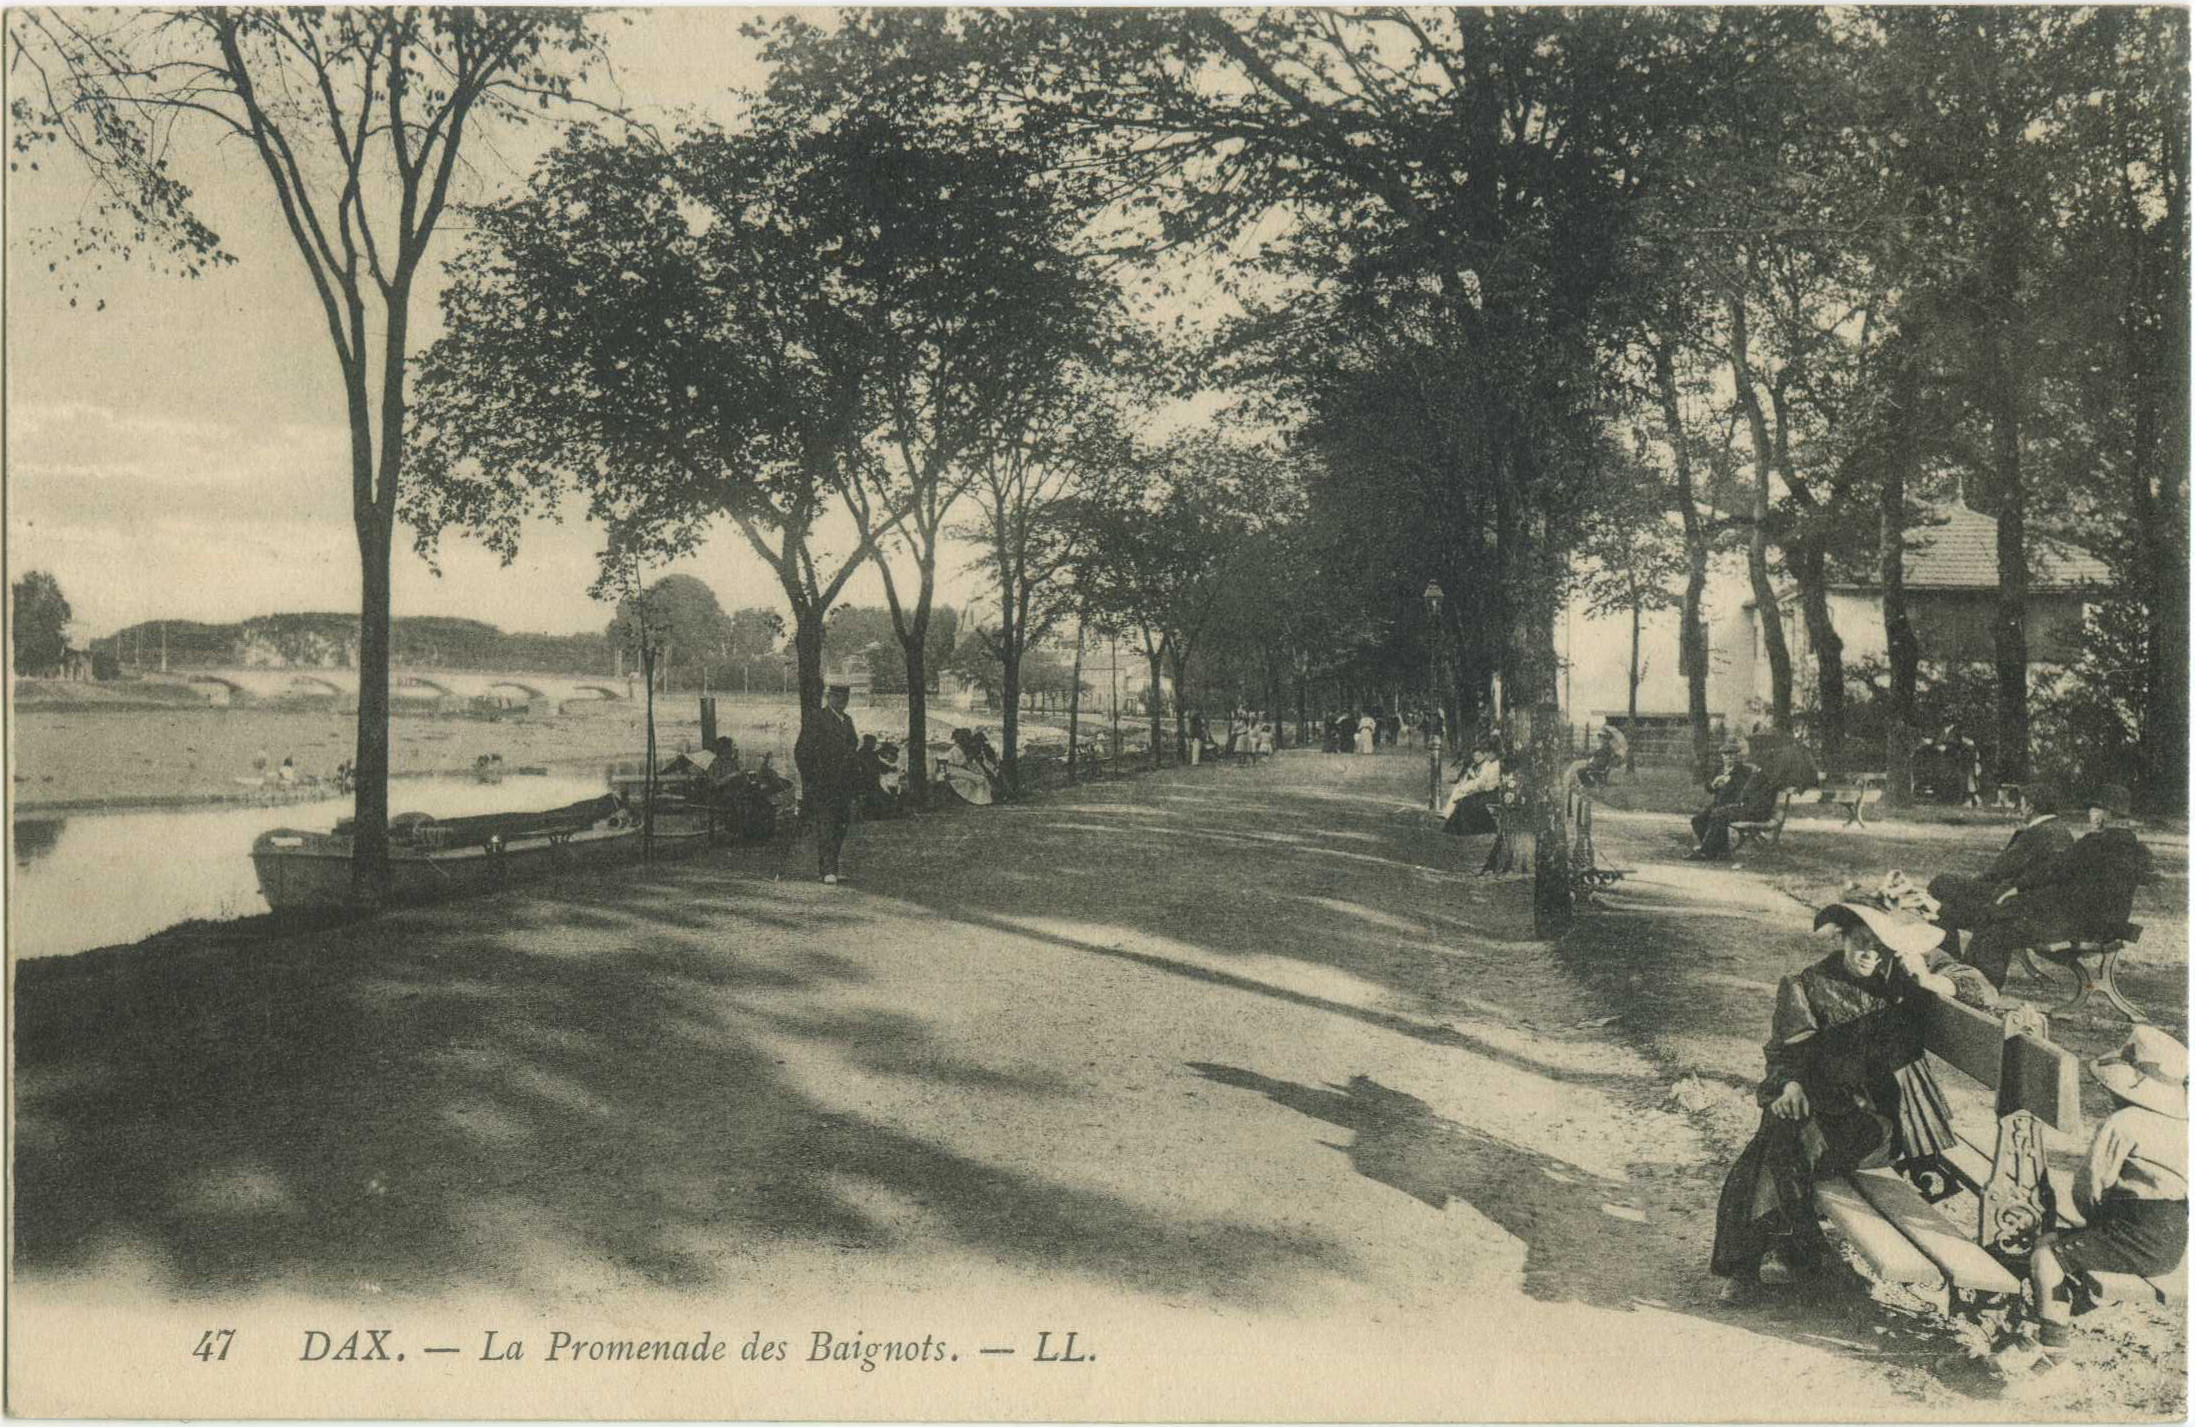 Dax - La Promenade des Baignots.